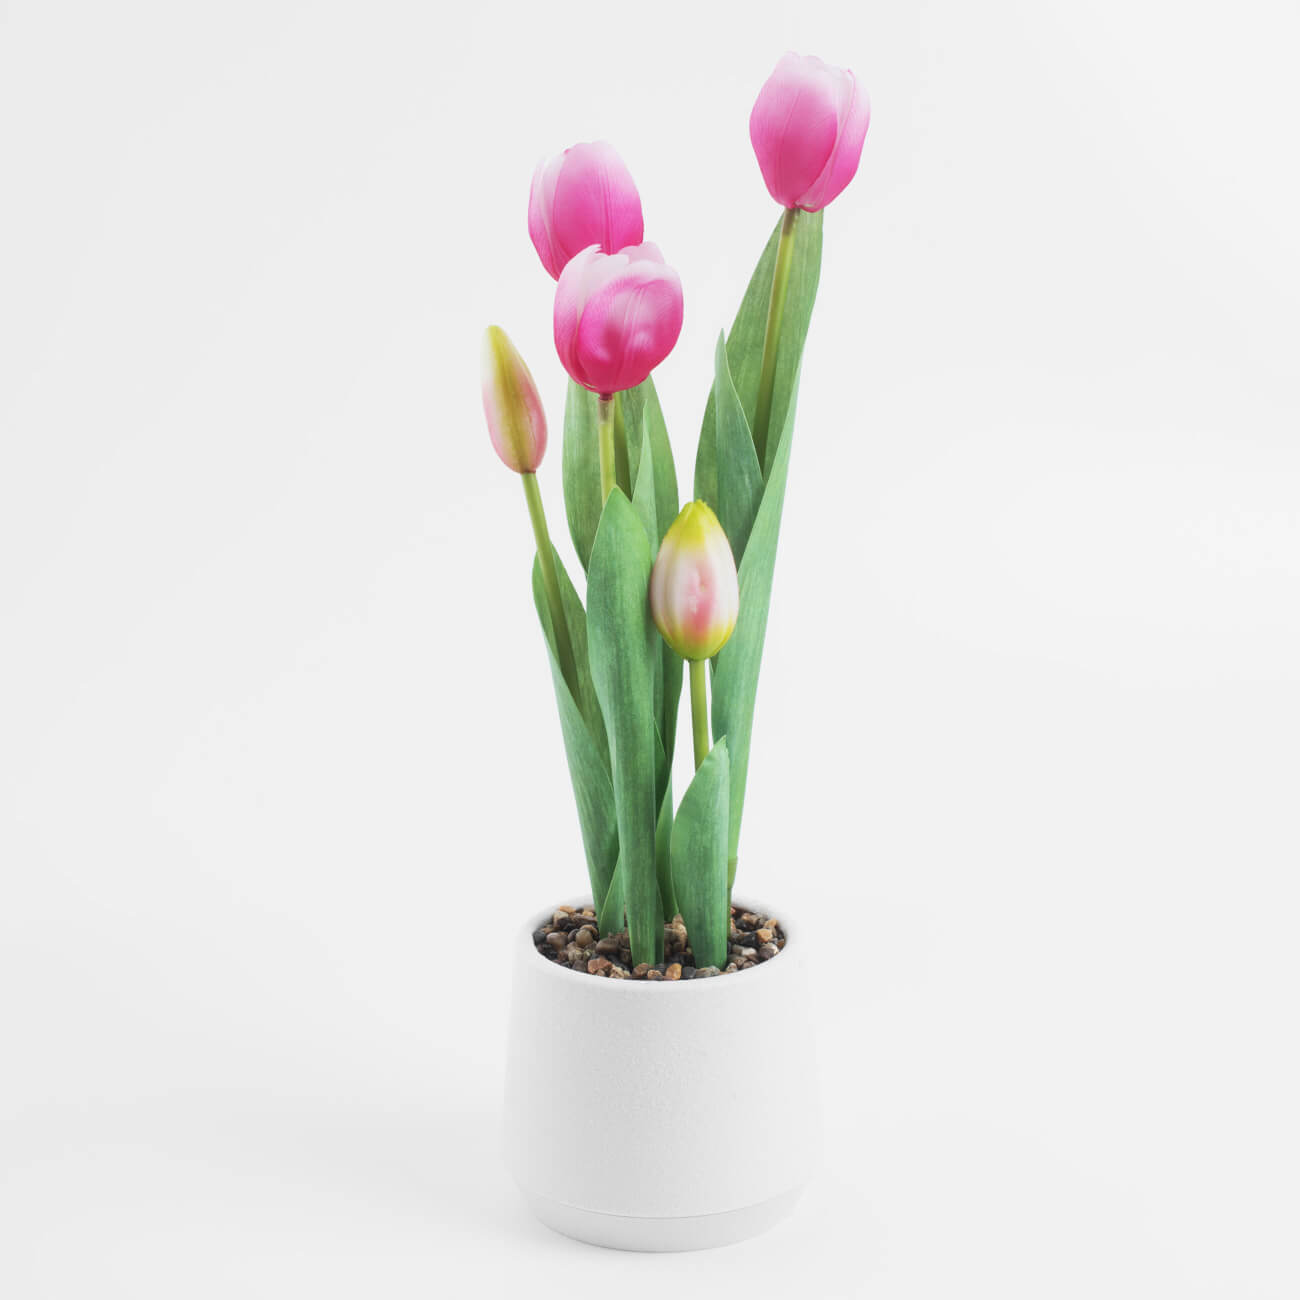 Растение искусственное, 36 см, в горшке, полиэстер/пластик, Розовые тюльпаны, Tulip garden растение силиконовое аквариумное светящееся в темноте 8 х 18 см зелёное